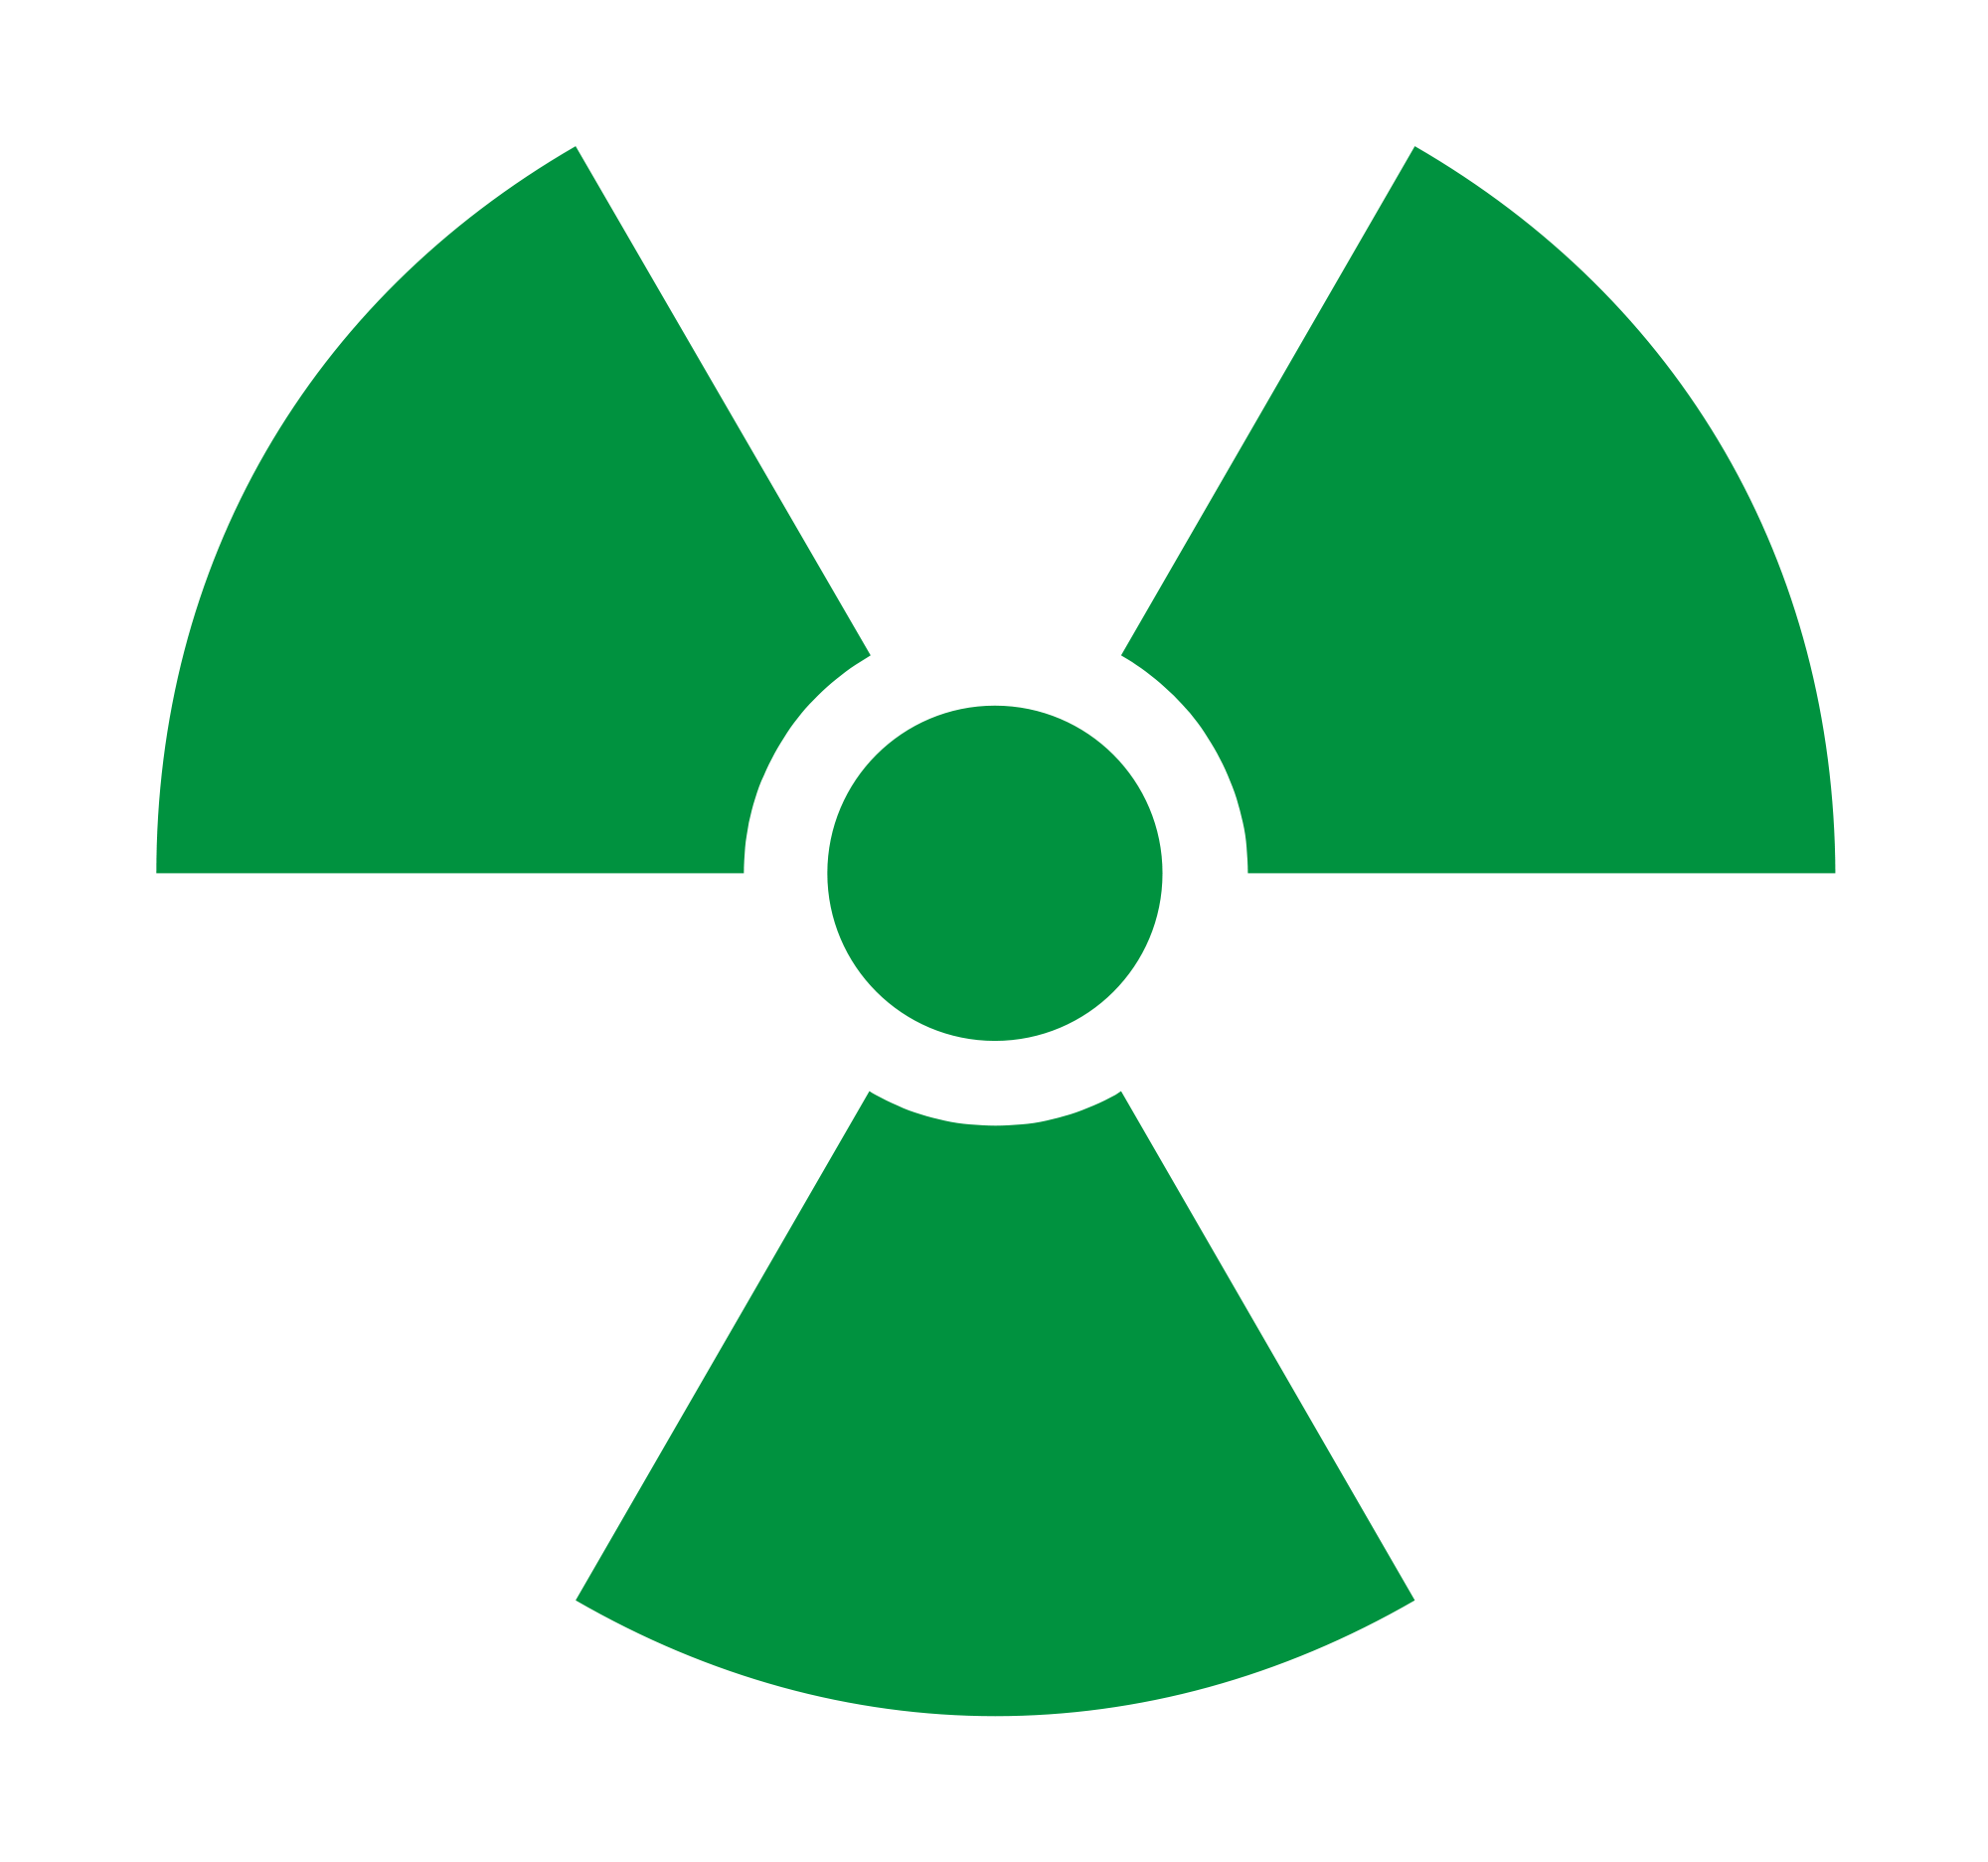 File:Radioactive Green.svg